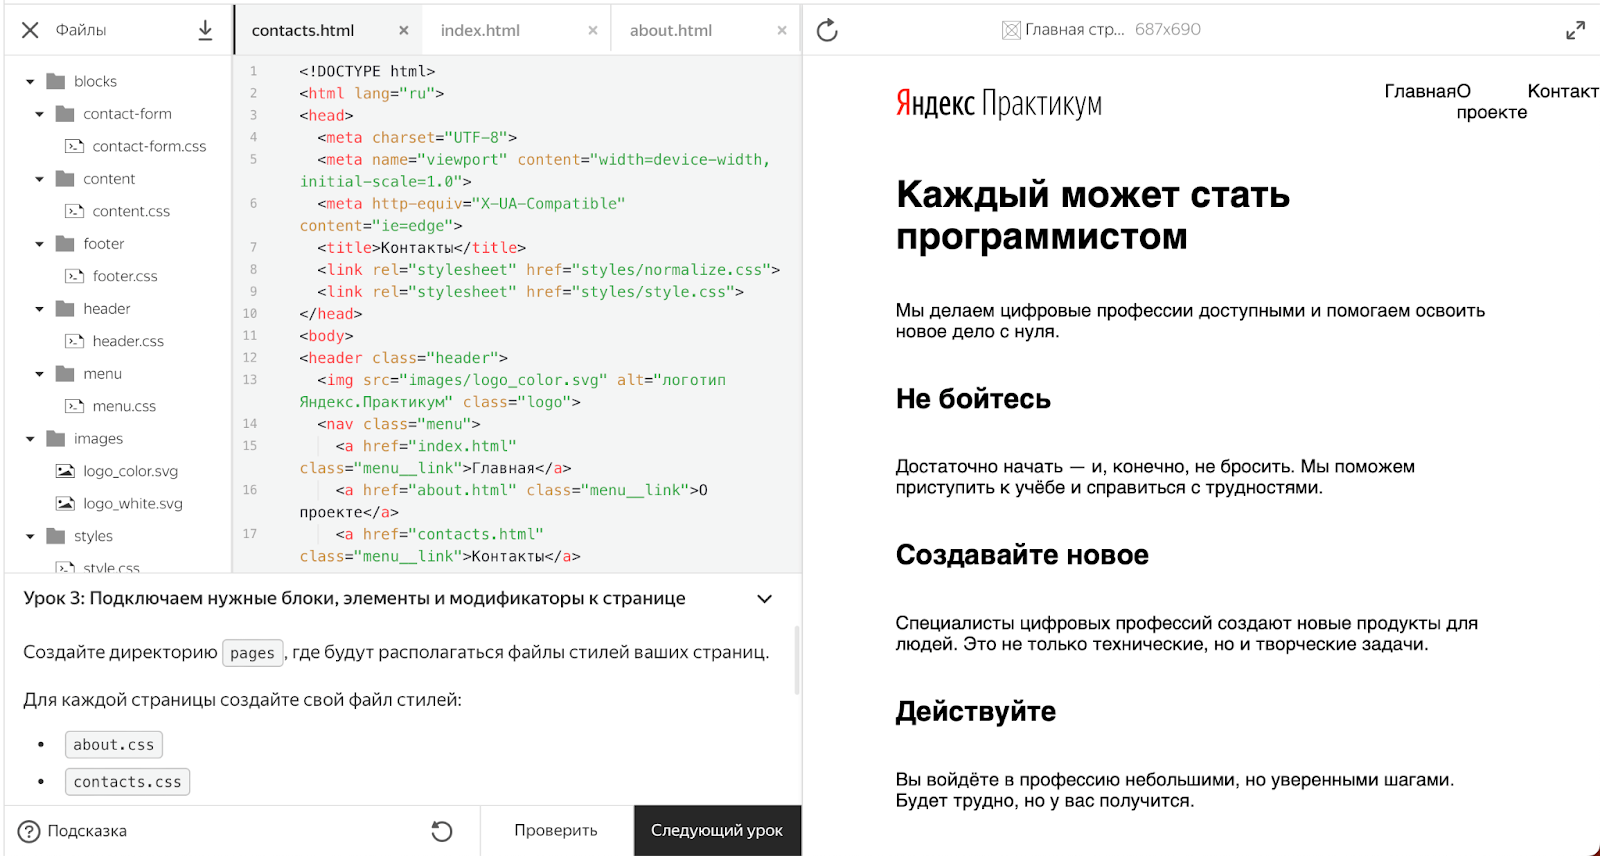 Так выглядит тренажёр в Яндекс.Практикума (Visual studio code курильщика)